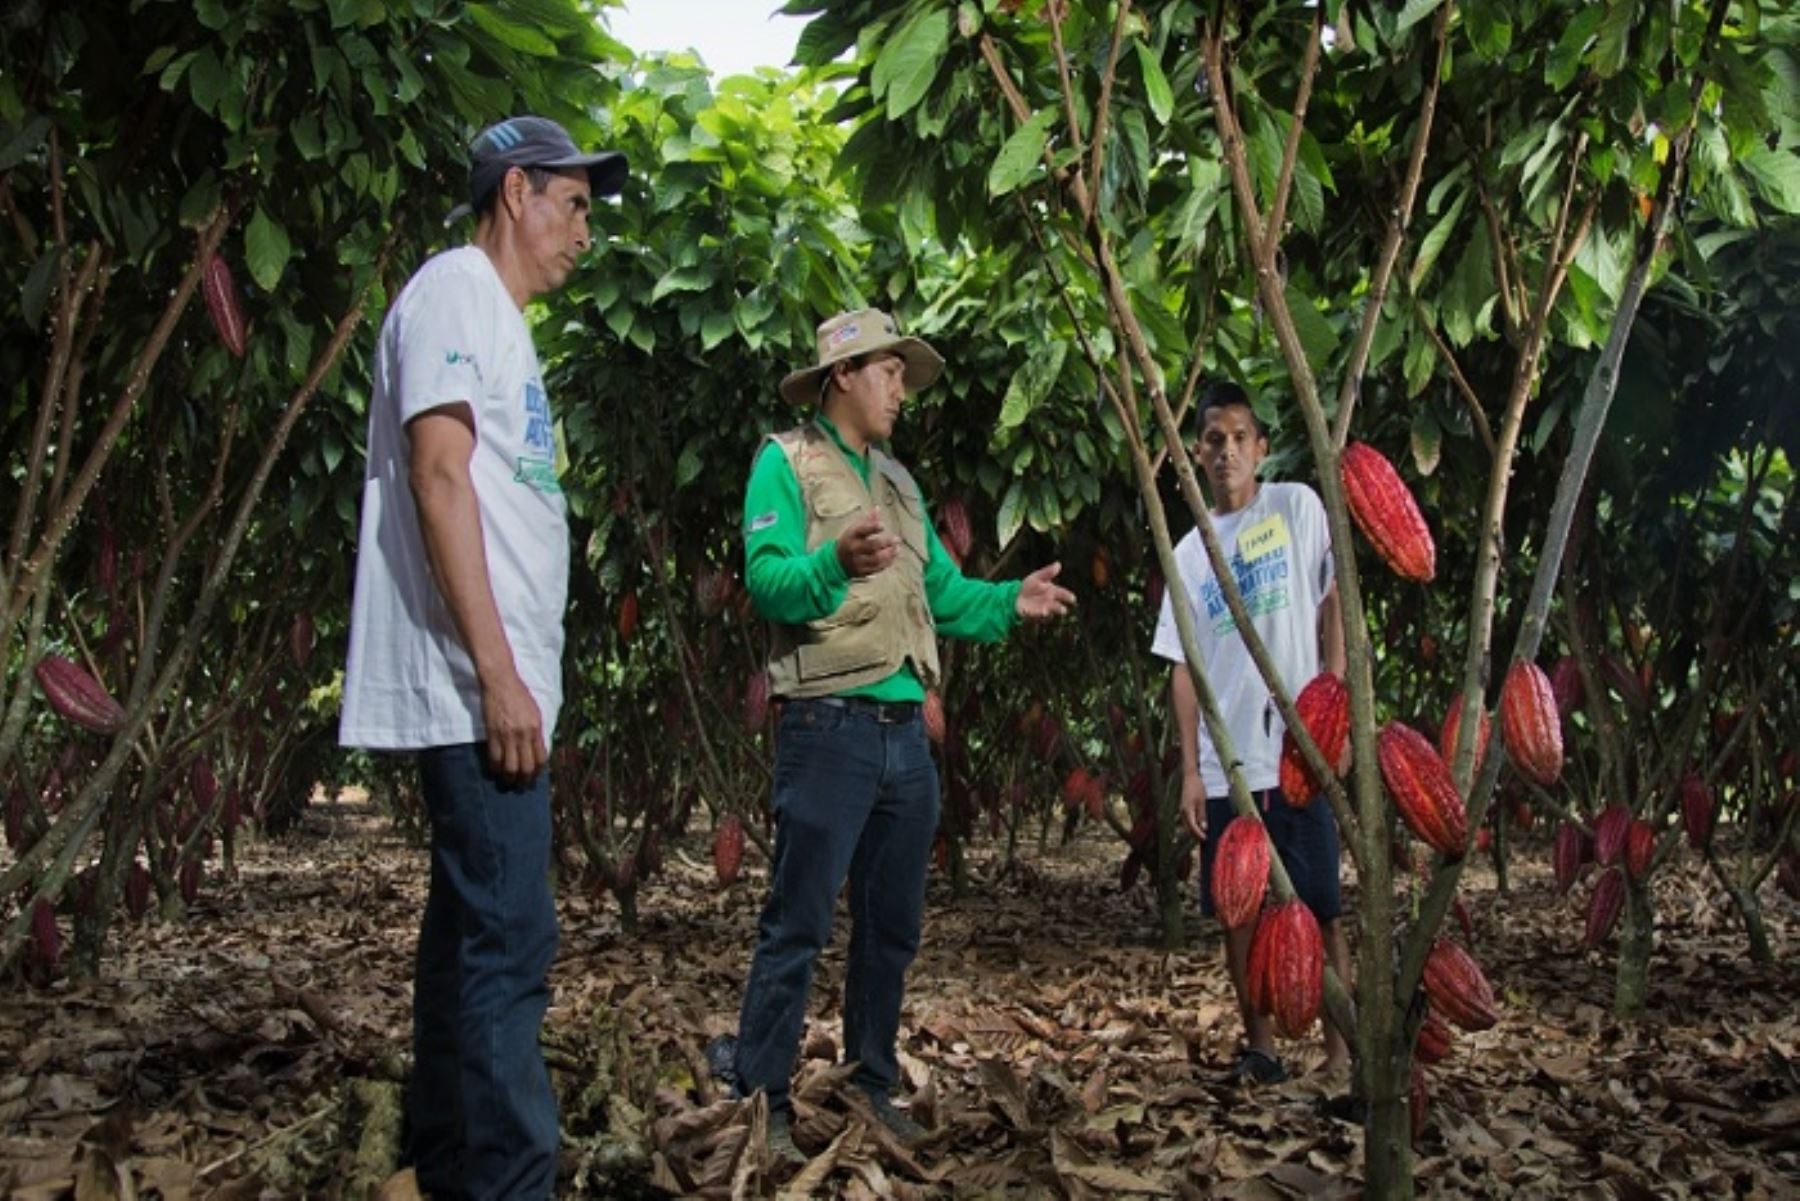 En el Vraem, Devida asiste en el cultivo de 2090 hectáreas de cacao, de las cuales 1425 se encuentran en la zona norte, 58 en la zona sur y 607 en la zona centro del Vraem. En tanto los cultivos de café suman 1300 hectáreas, de las cuales 878 se encuentran en la zona norte, 230 en el sur y 192 en el centro del valle.